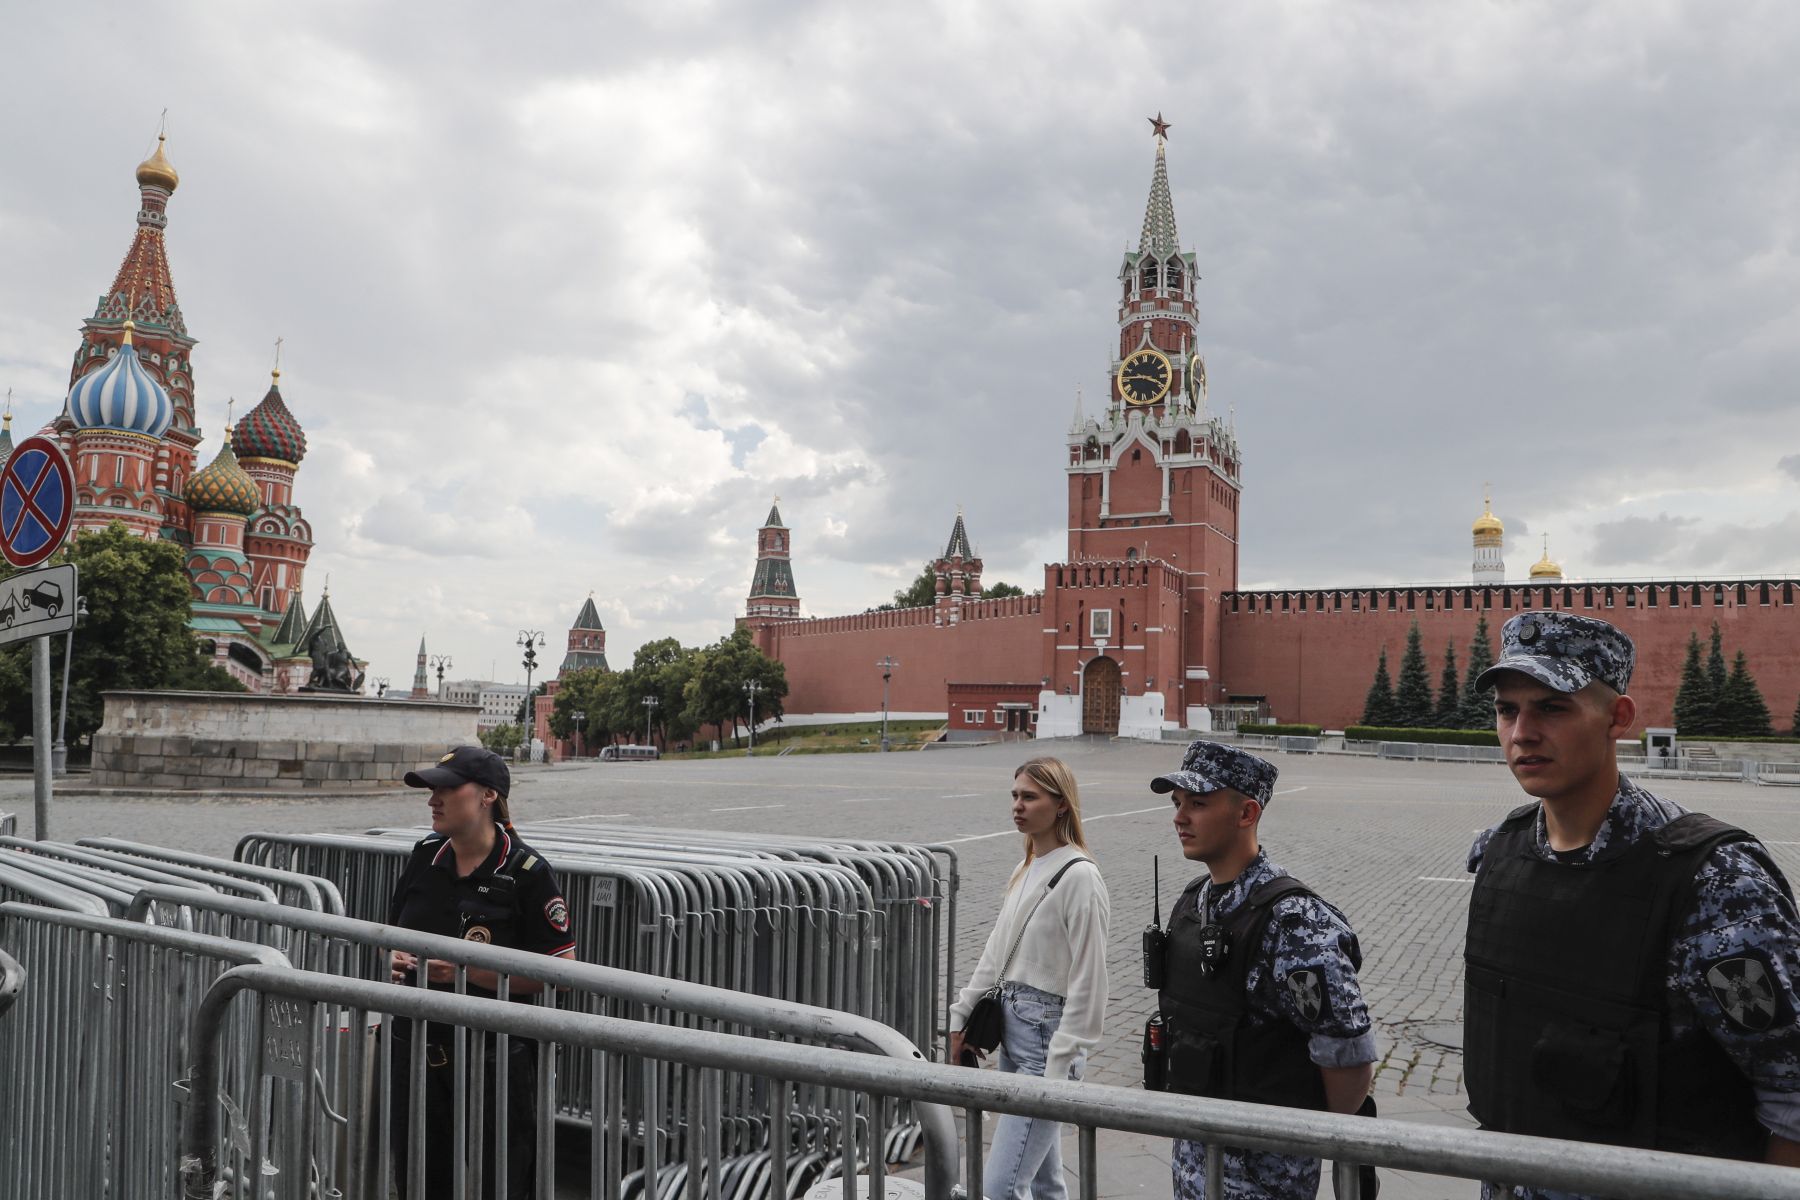 Súlyos következményei lesznek még a majdnem Moszkváig érő lázadásnak